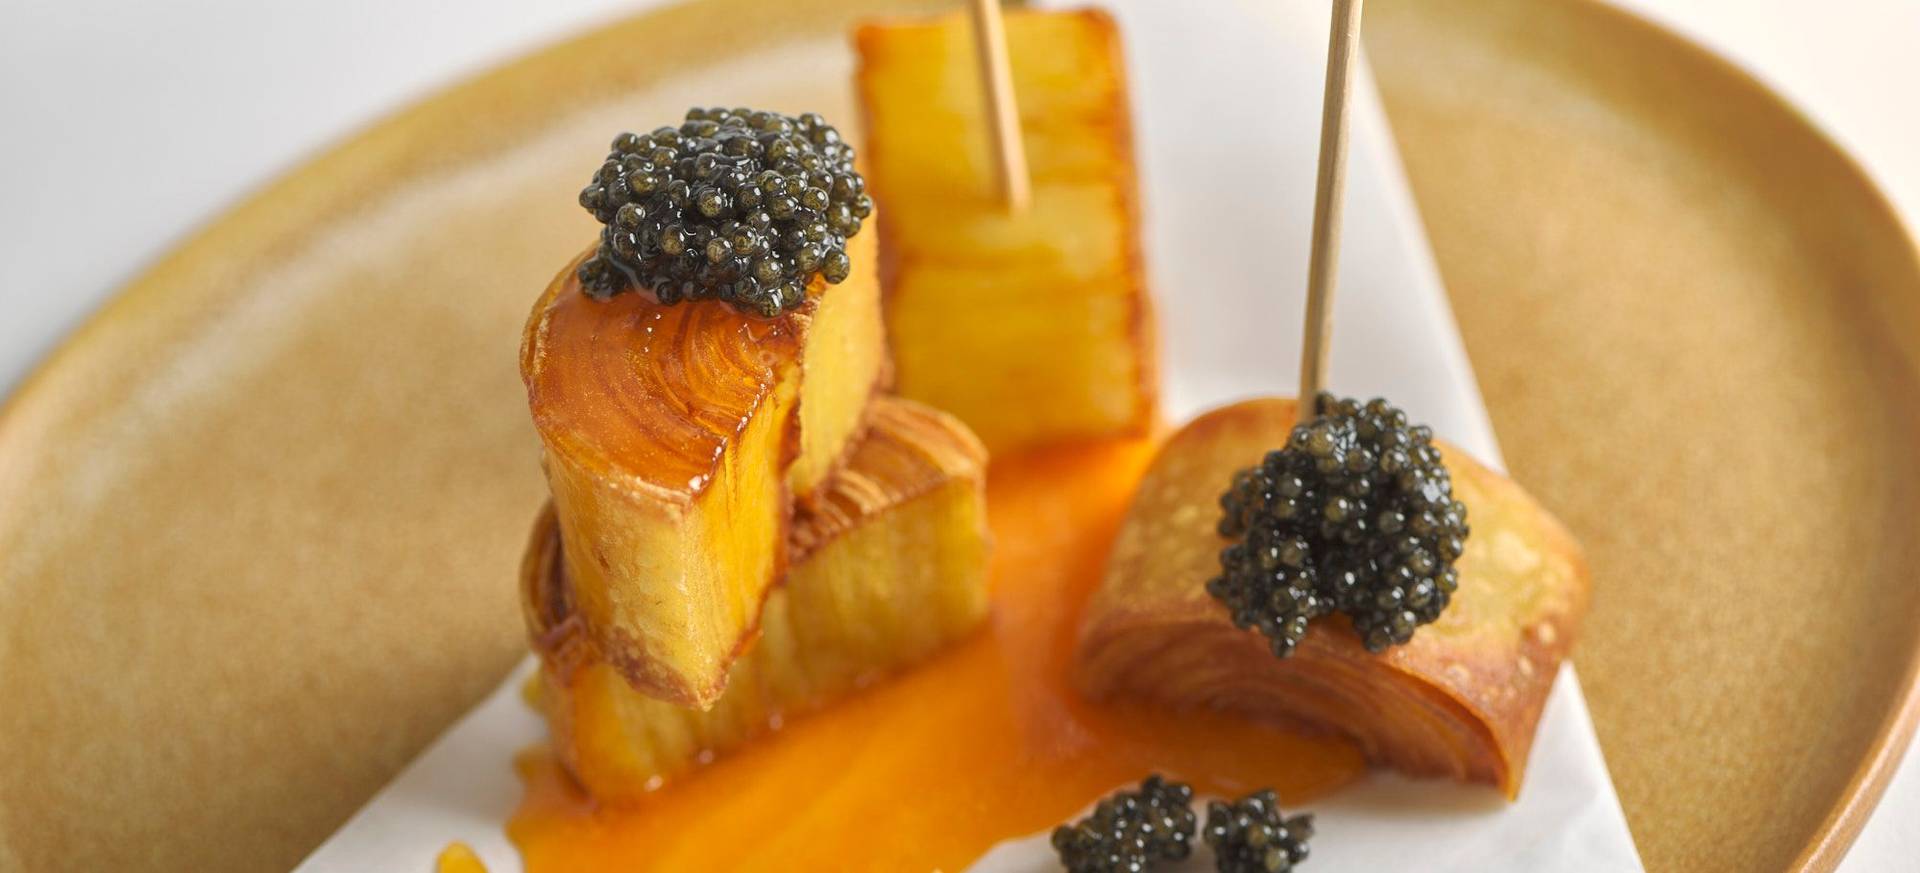 Crispy Potato Swirls with Egg Yolk & Caviar